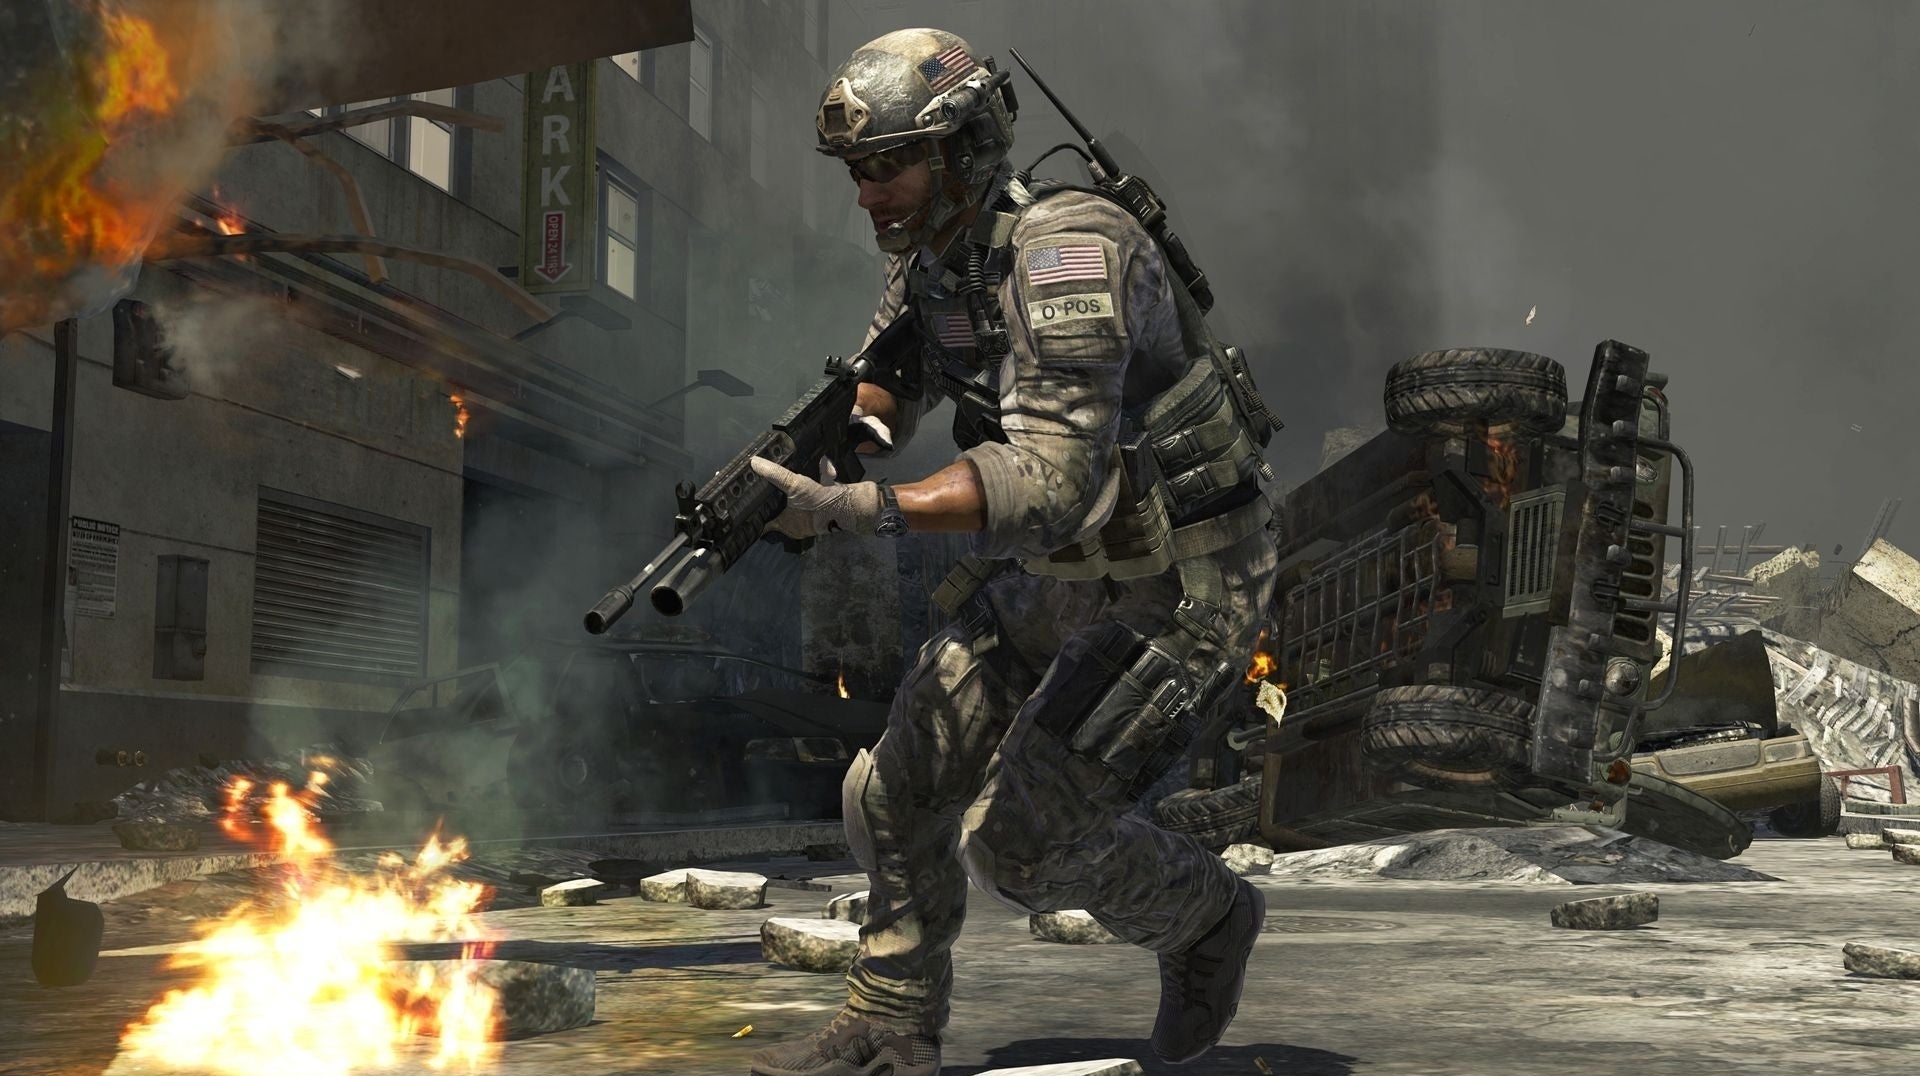 Ristede Grundlægger rødme Modern Warfare 3 remaster "does not exist", Activision insists |  Eurogamer.net